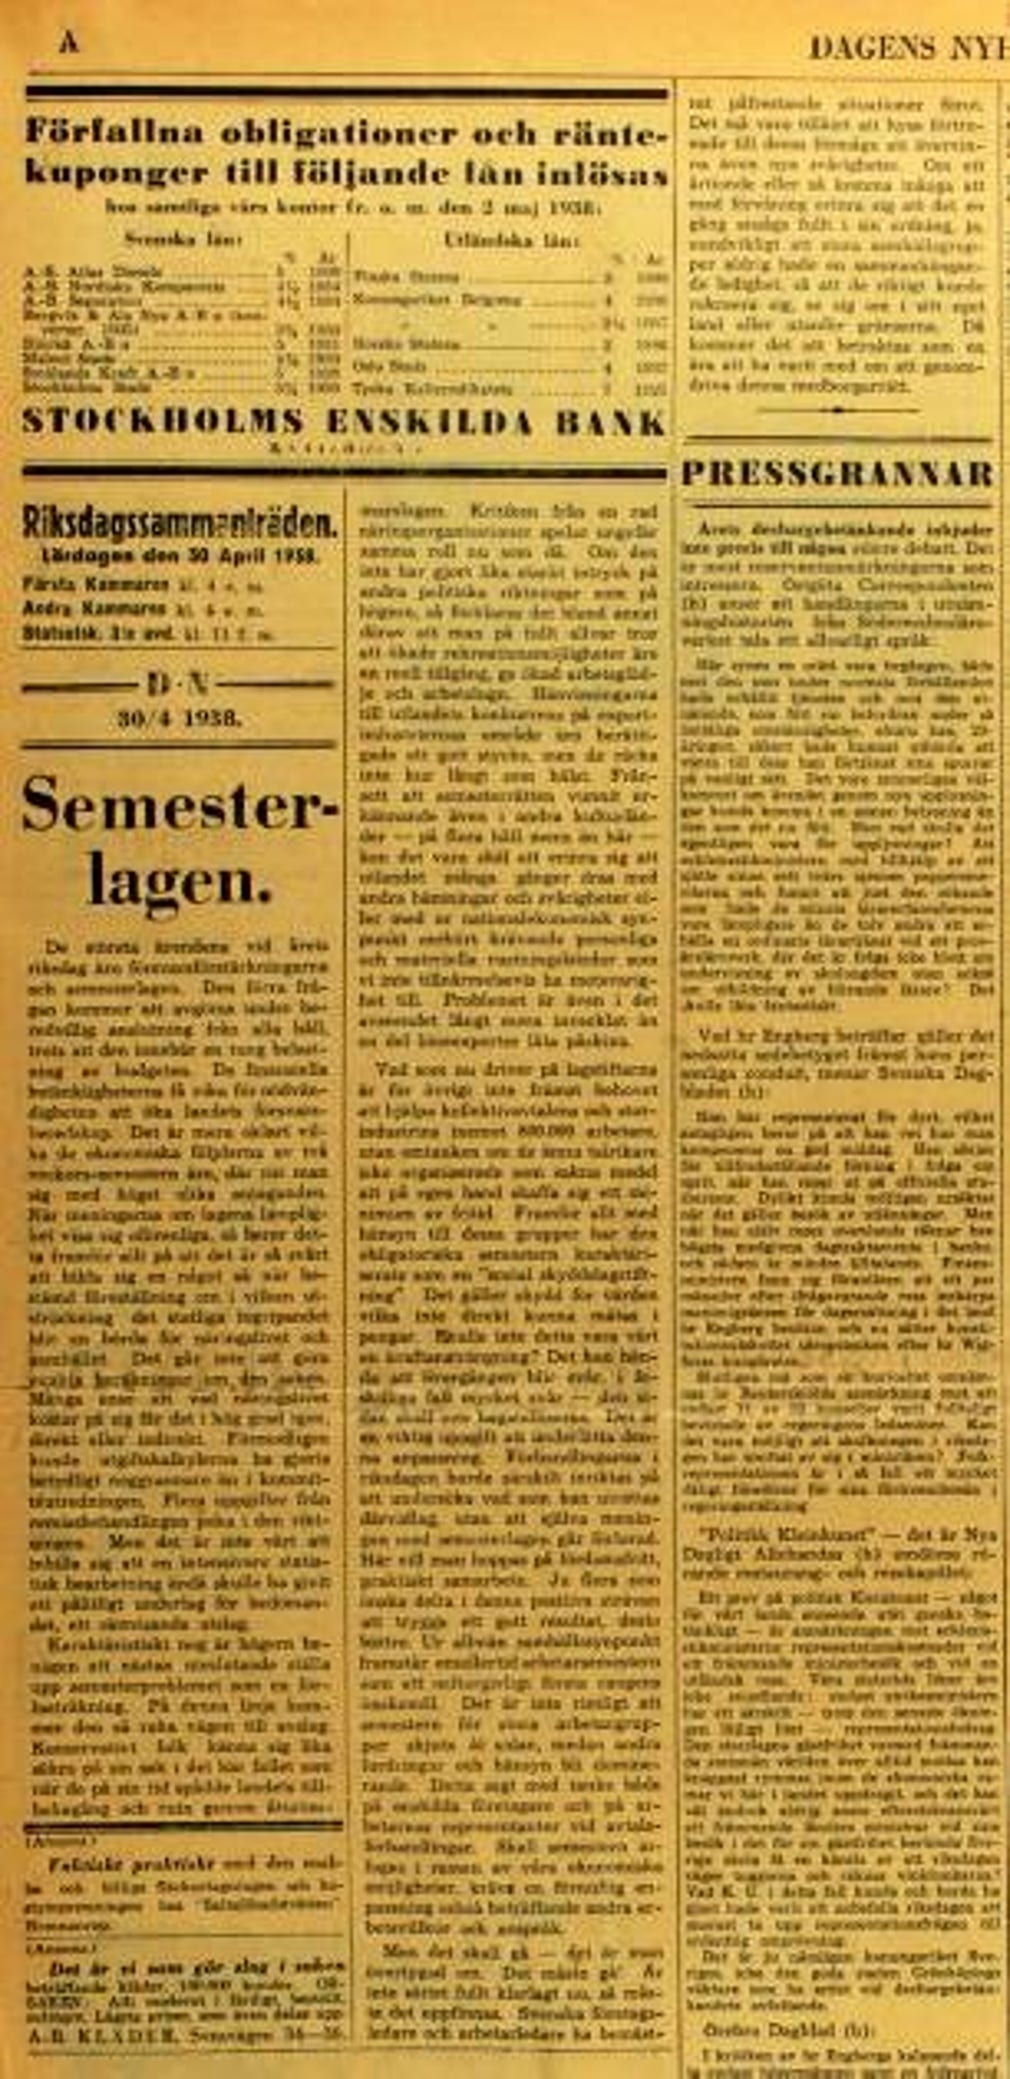 Det tredje klippet är en artikel när semesterlagen infördes den 30 april 1938.